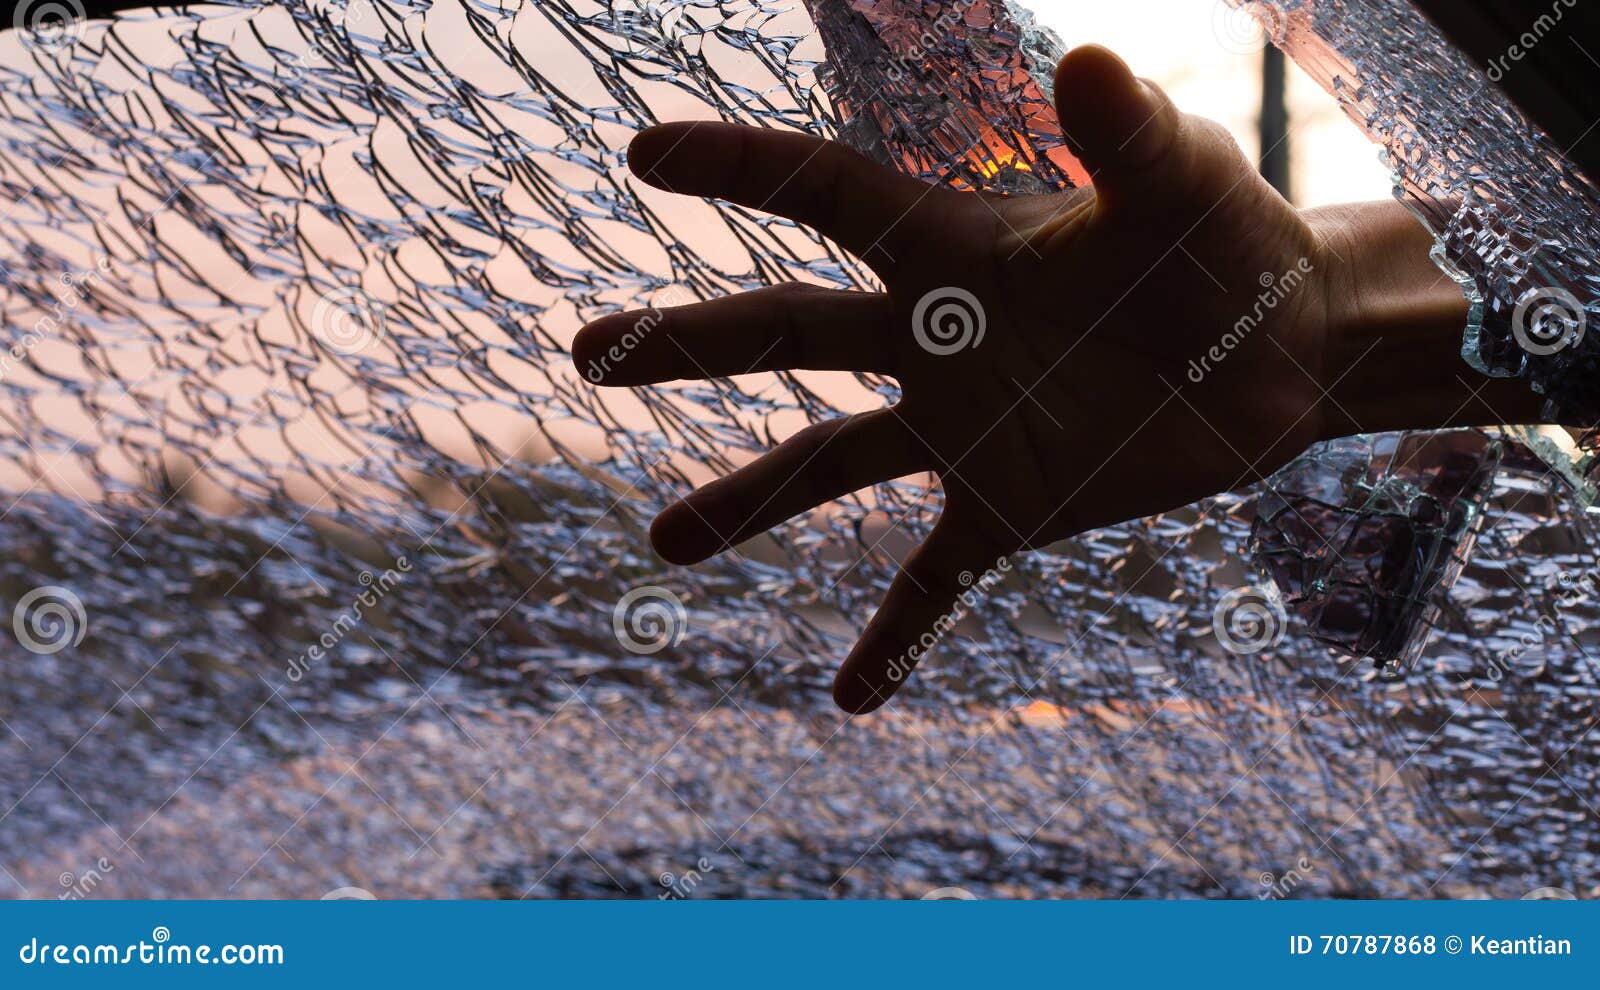 Стекло в руке песня. Ладони на стекле вид снизу. Фото рук с которых стекает грязь.